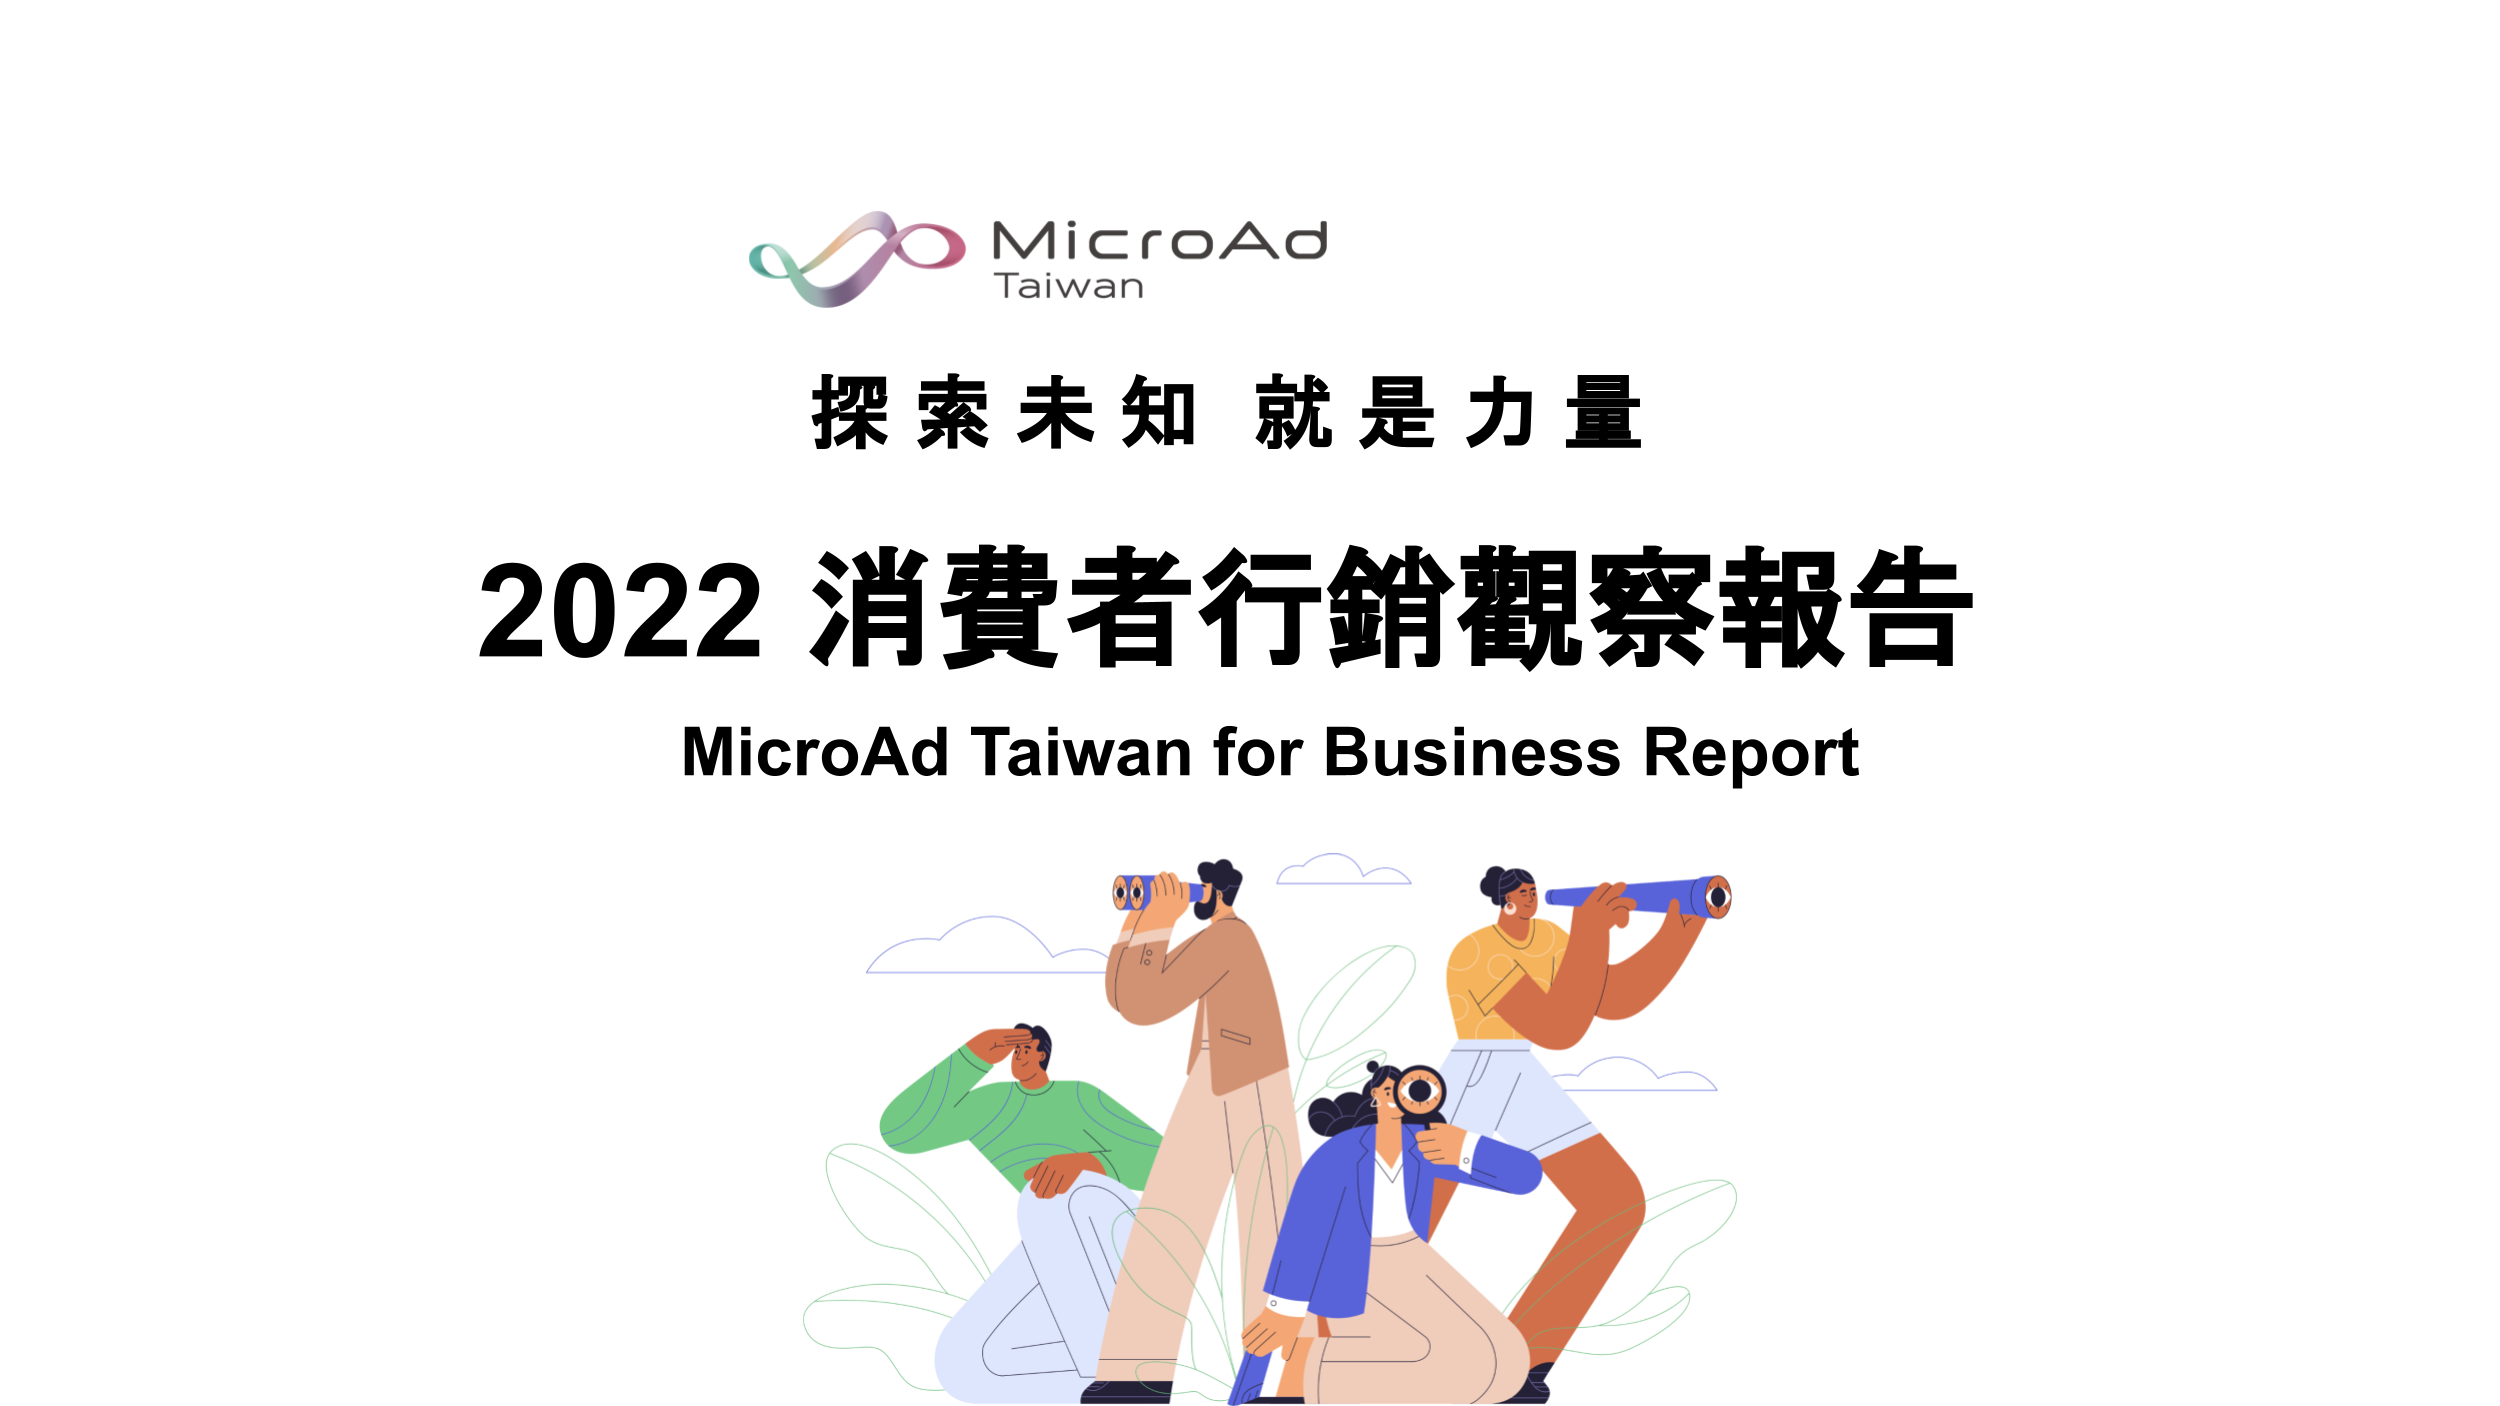 台灣微告發布「2022 消費者行銷觀察報告」 洞察消費者行為的 8 大轉變，探索未知化作力量